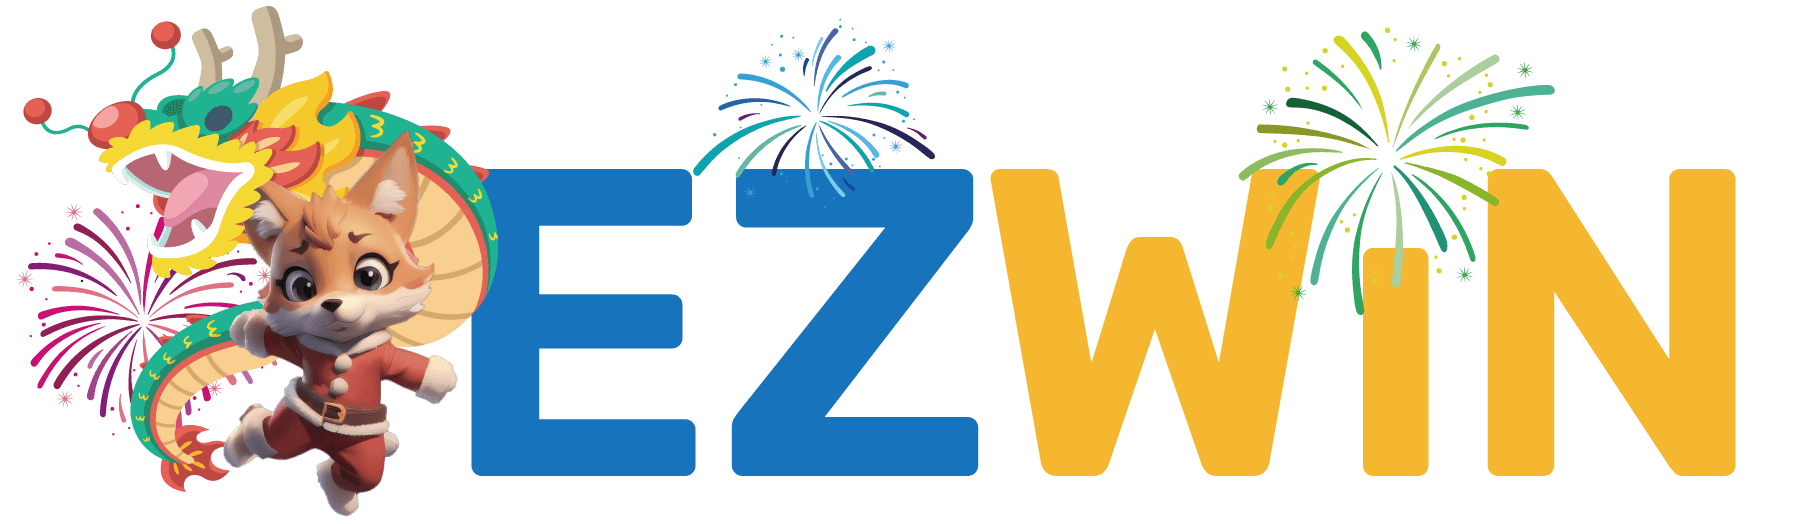 ezwin_offficial_logo